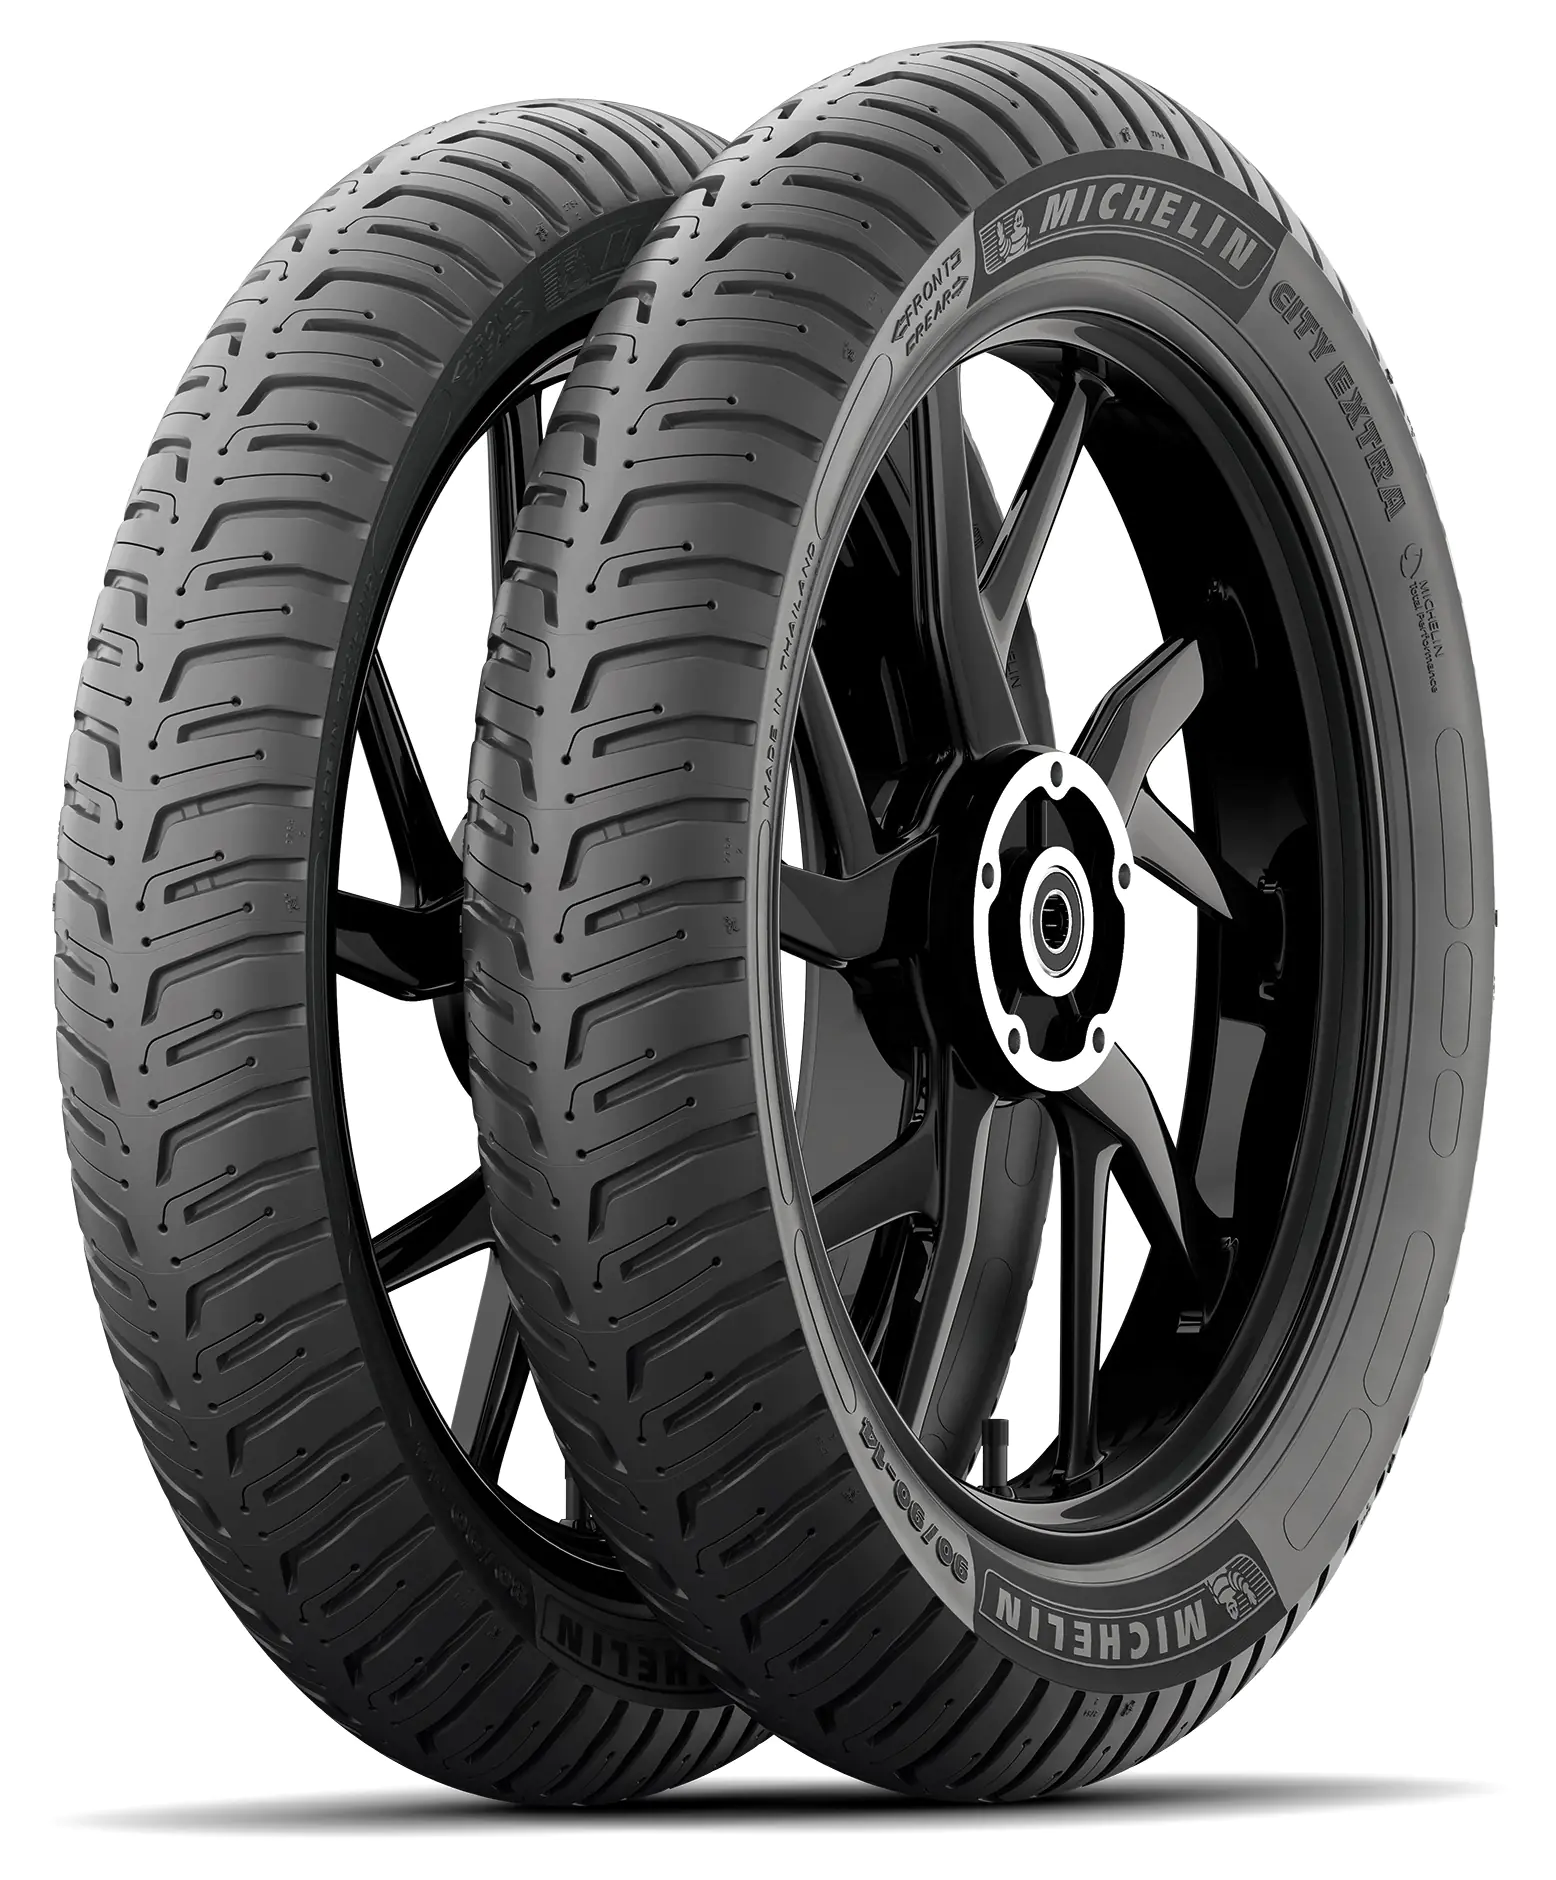 Michelin Michelin 2.50-17 43P Cityextra pneumatici nuovi Estivo 